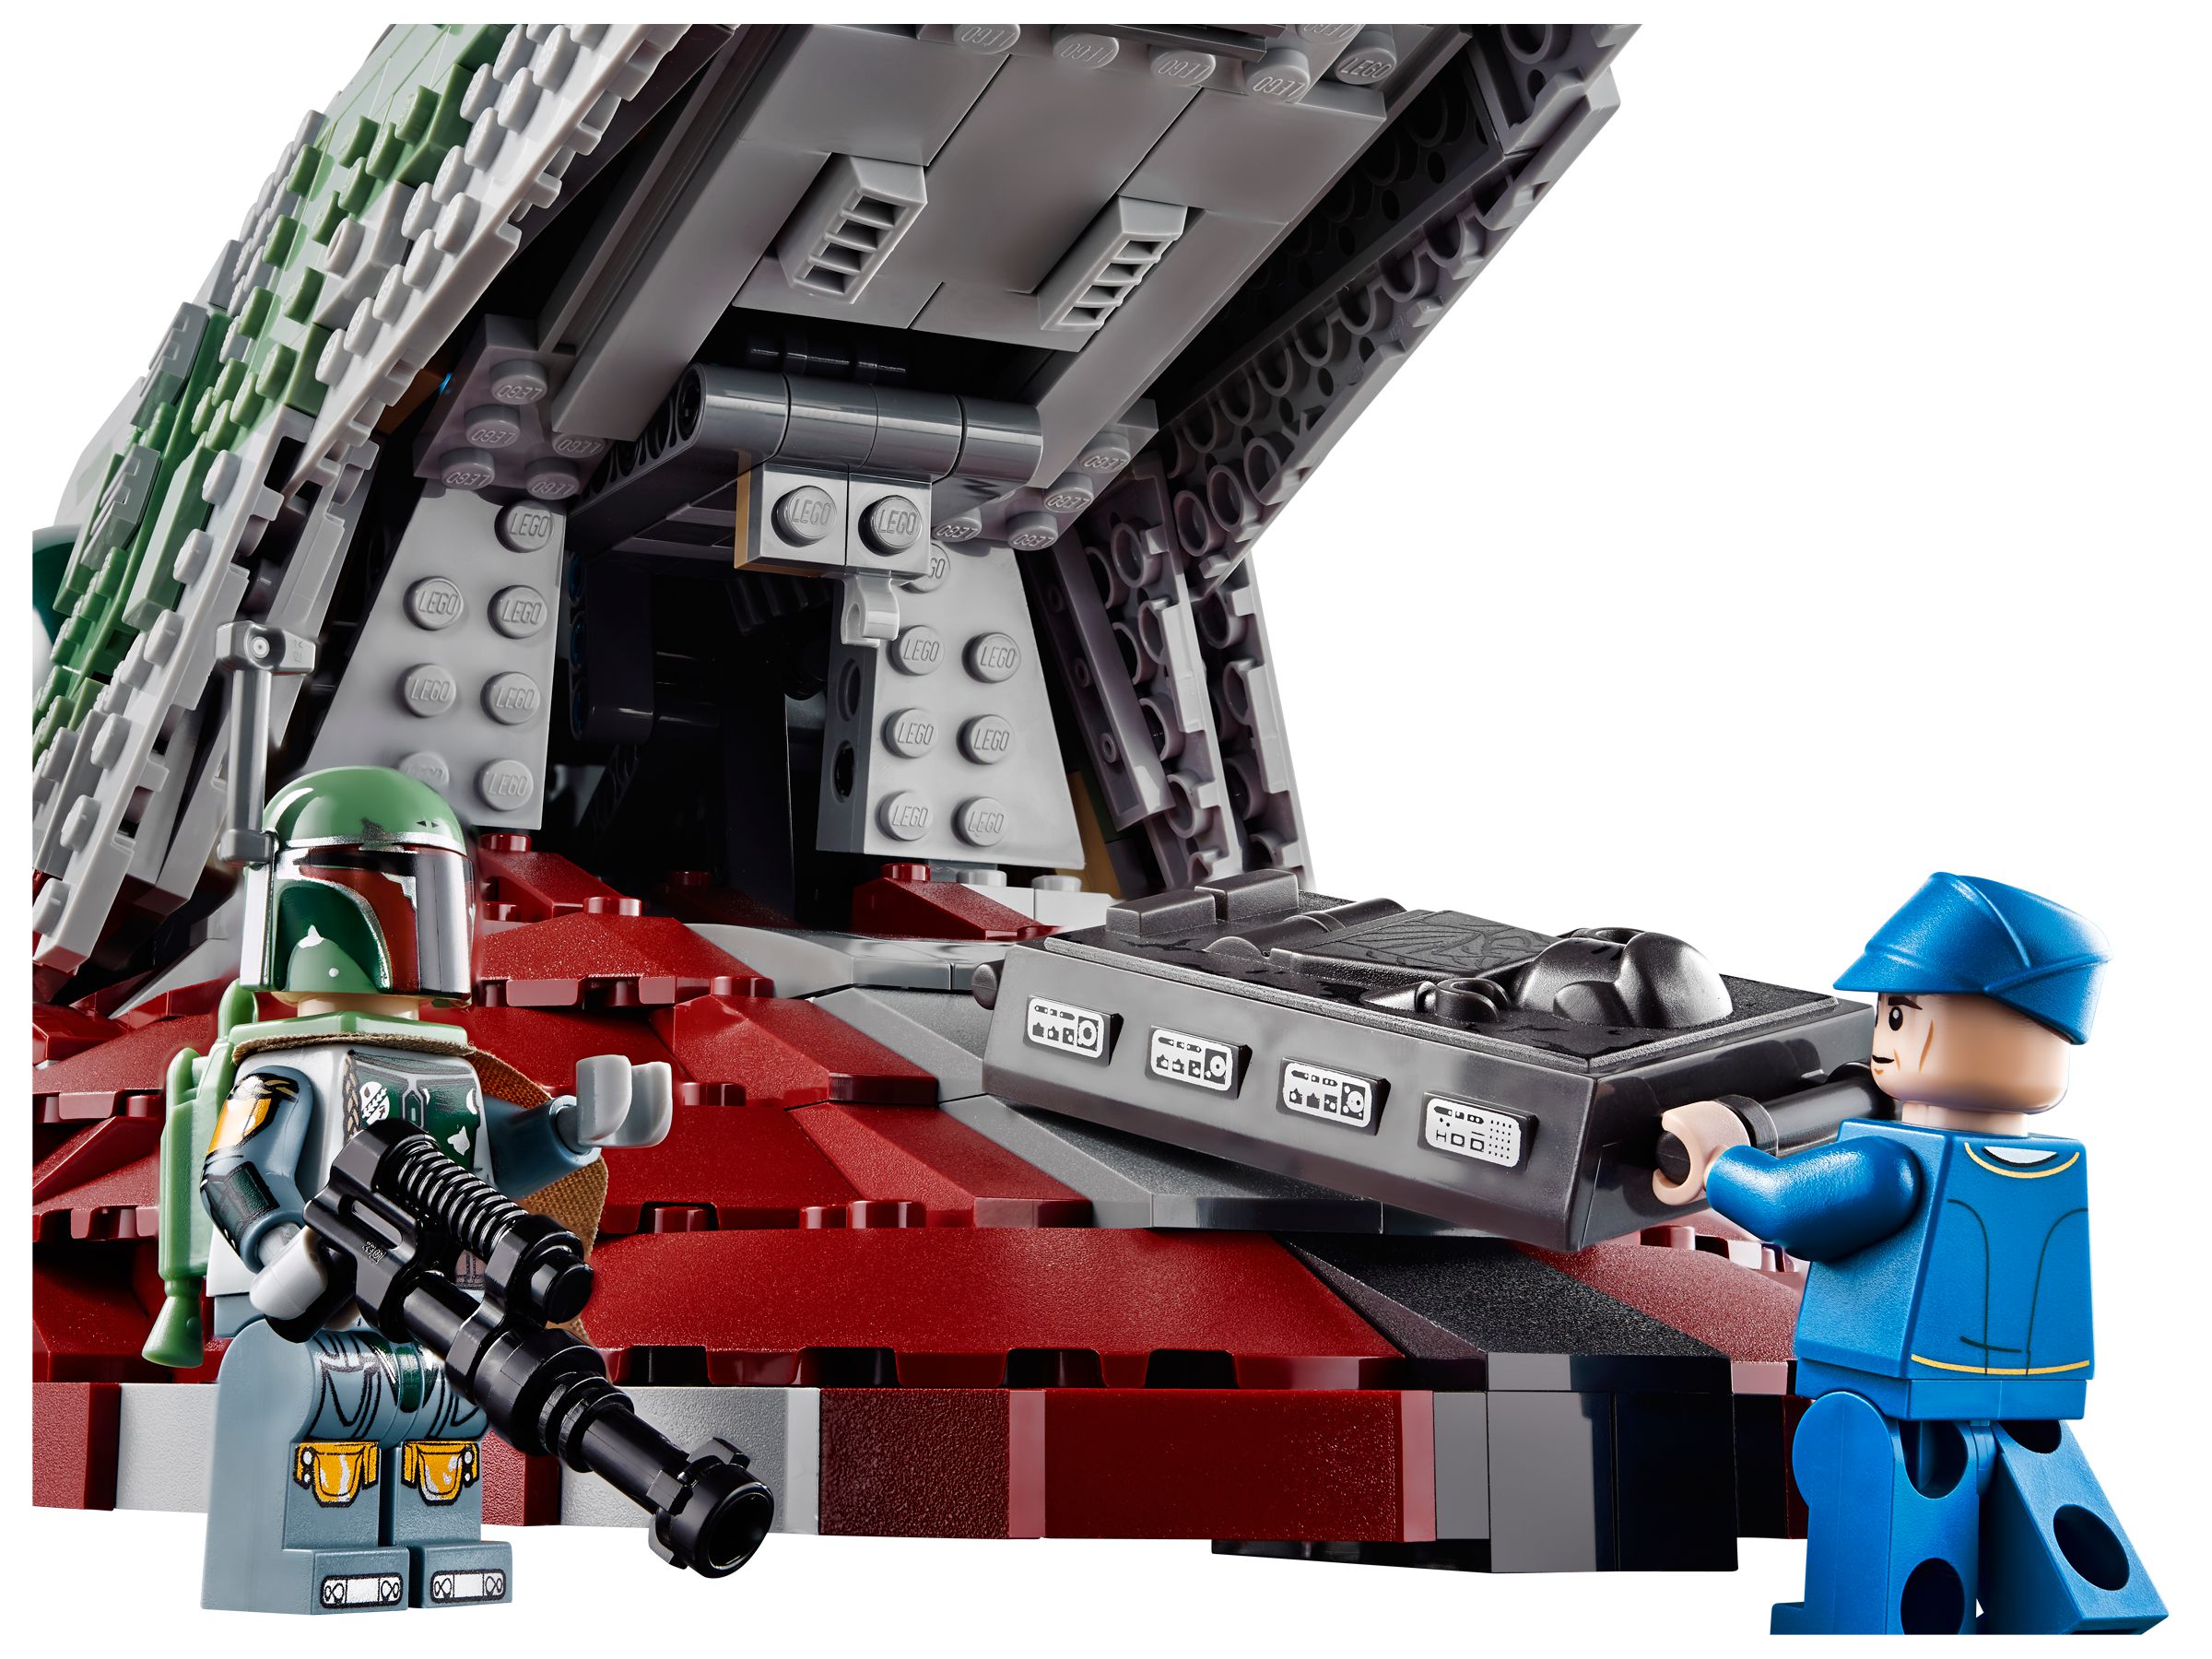 LEGO Star Wars 75060 UCS Slave I LEGO_75060_alt7.jpg